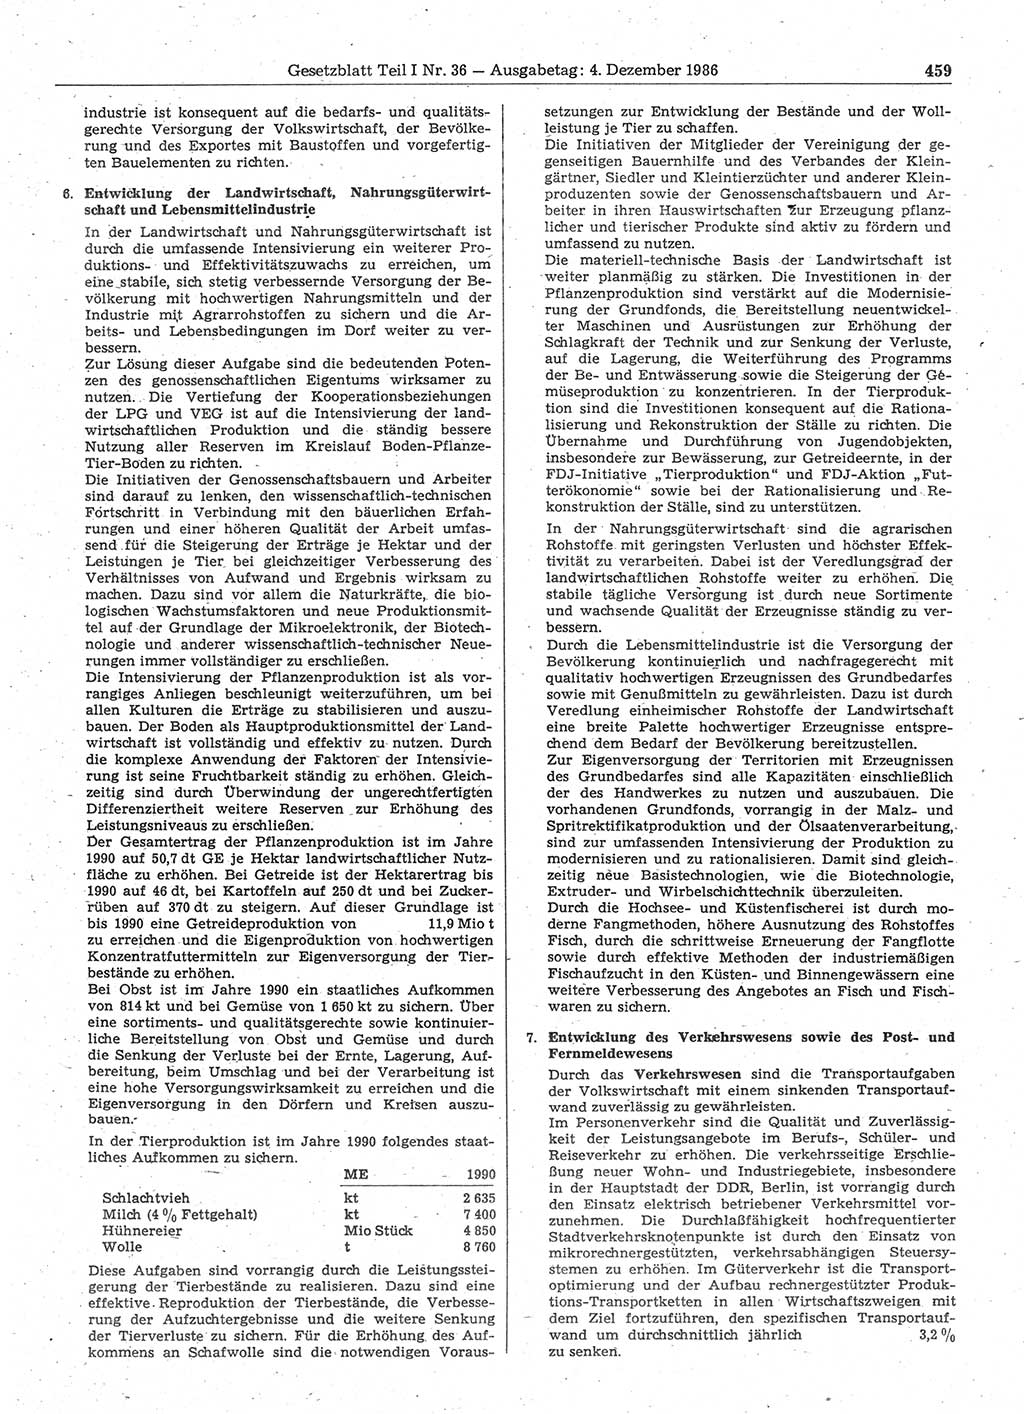 Gesetzblatt (GBl.) der Deutschen Demokratischen Republik (DDR) Teil Ⅰ 1986, Seite 459 (GBl. DDR Ⅰ 1986, S. 459)